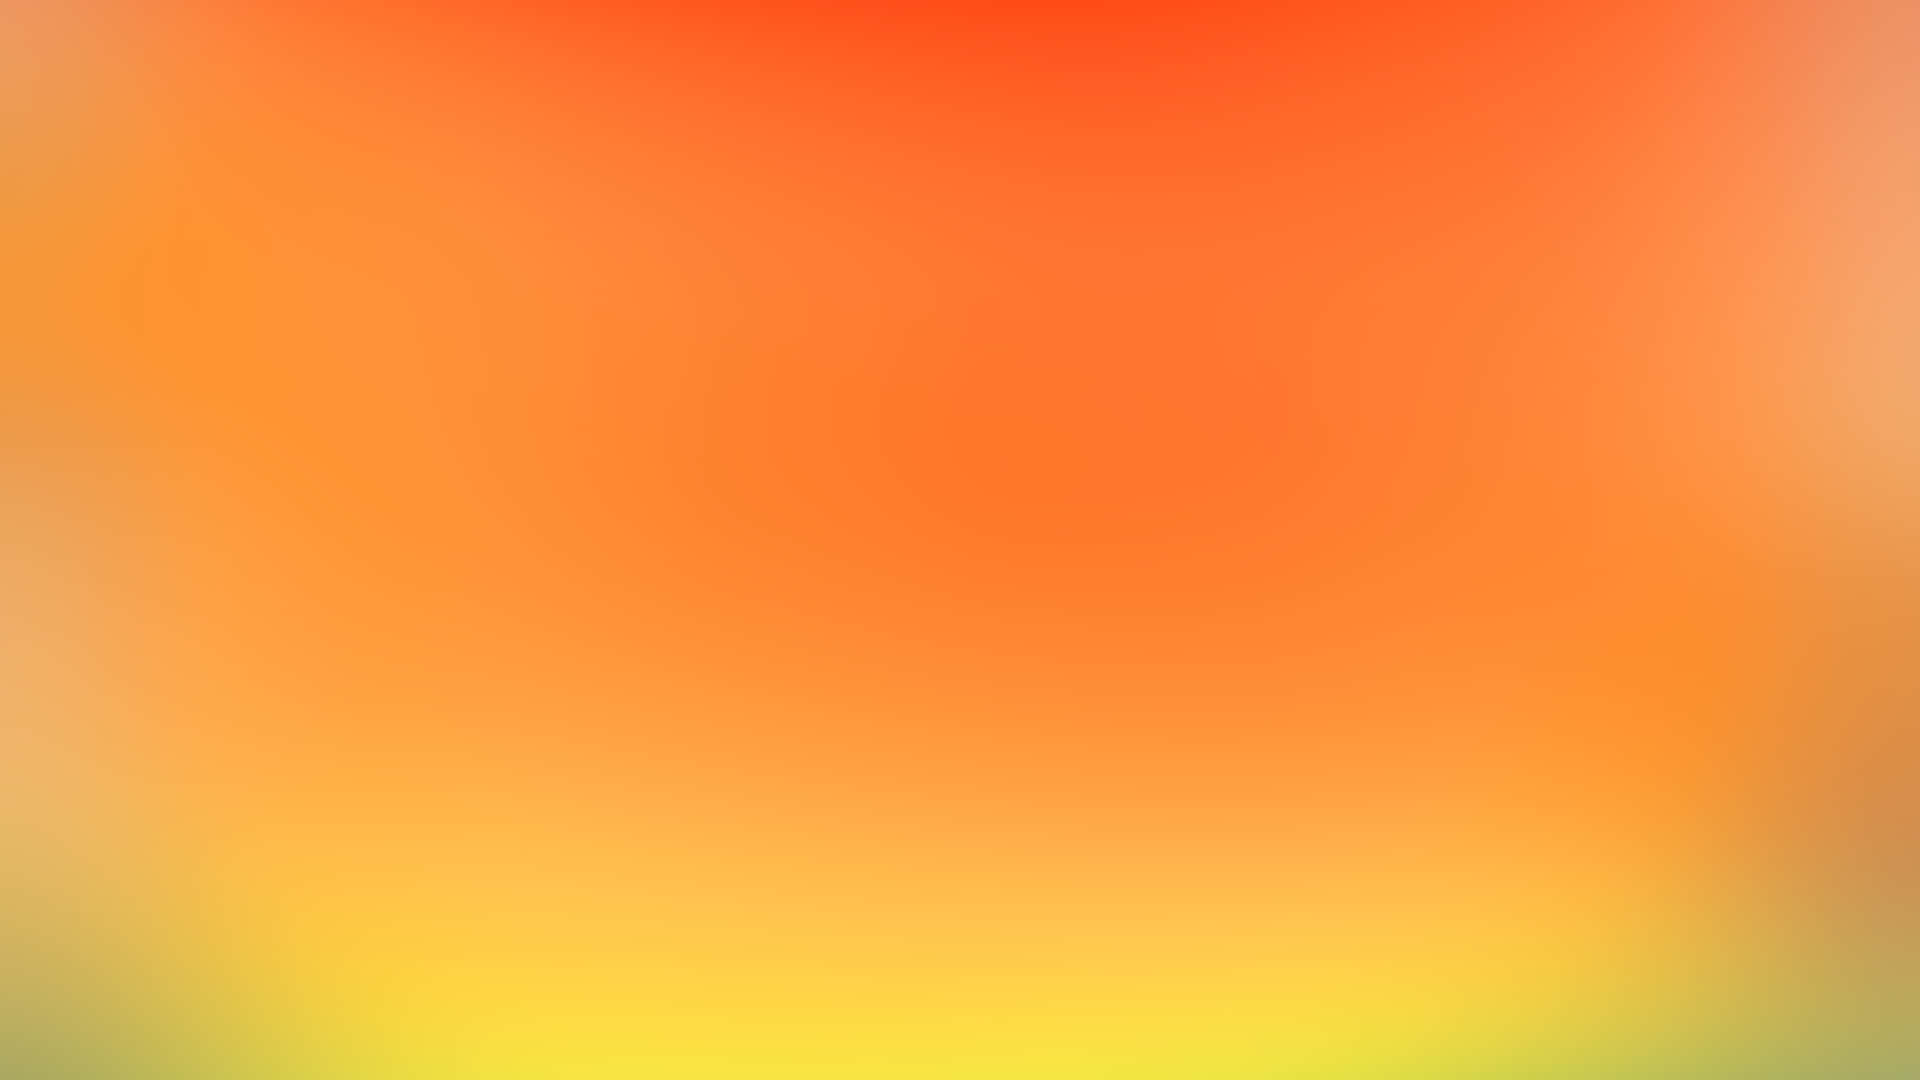 Denglödande Nyansen Av En Ljus Orange Färg På Dator- Eller Mobiltelefon Bakgrund. Wallpaper